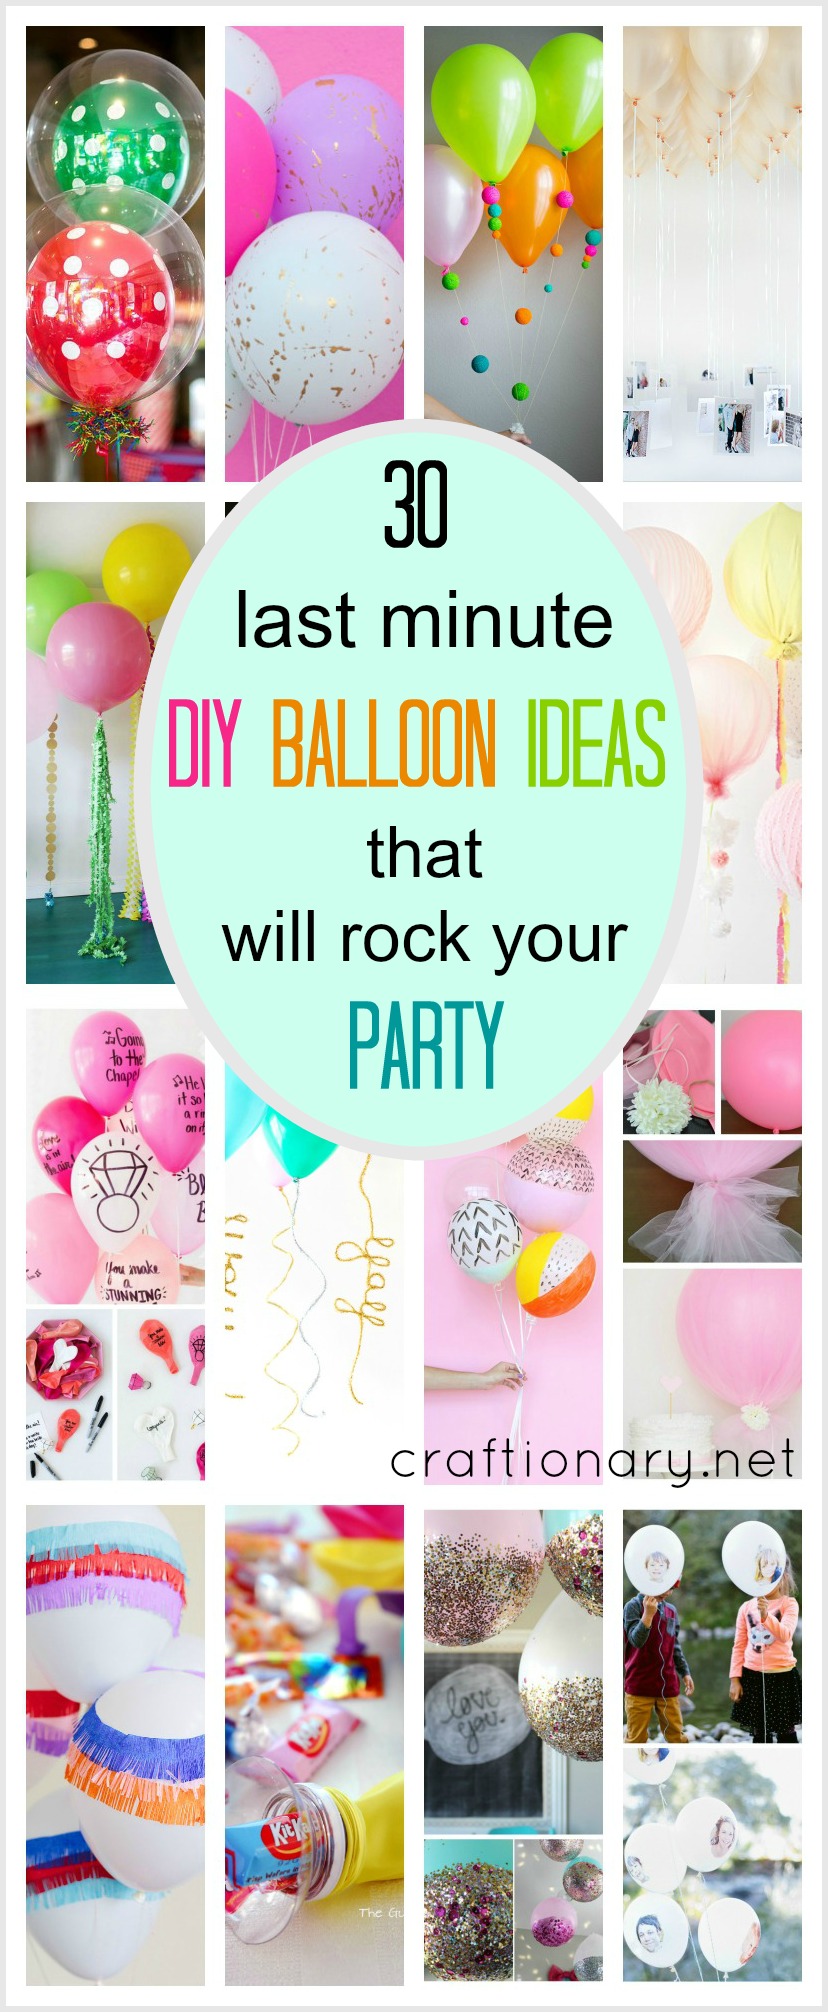 10+ ý tưởng trang trí sinh nhật hài hước và độc đáo ideas for birthday decoration 